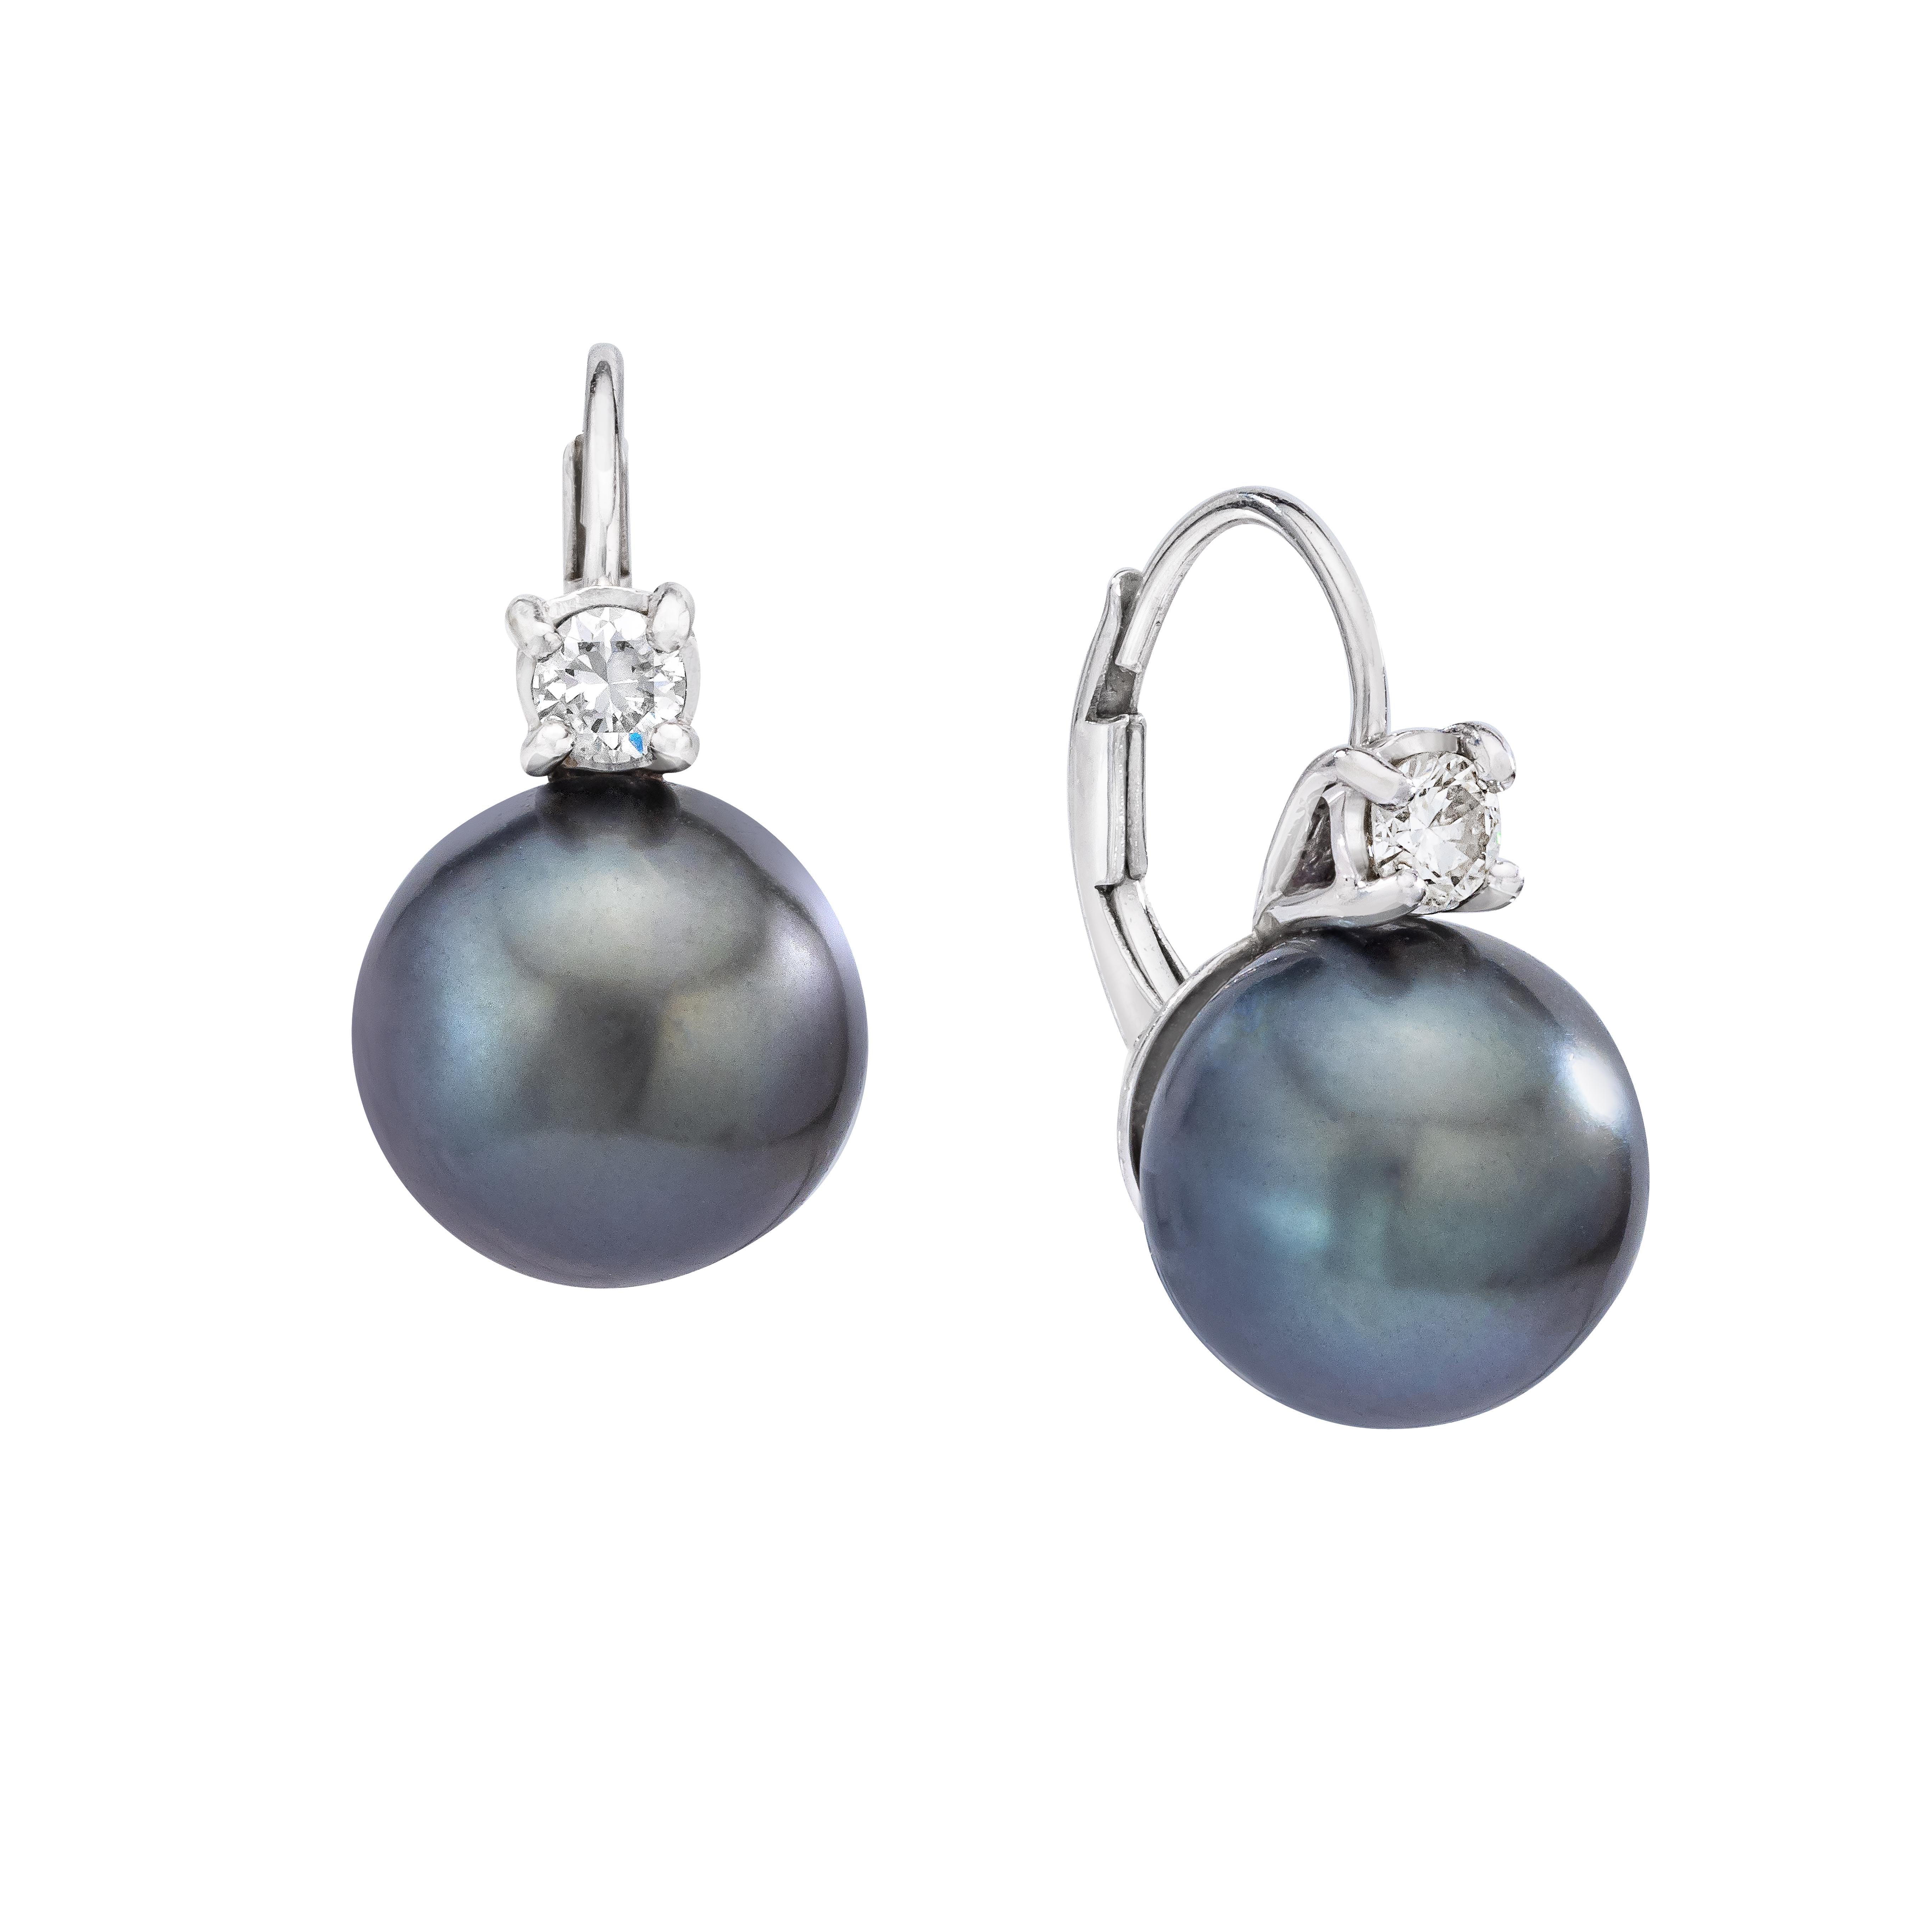 De magnifiques boucles d'oreilles polyvalentes en perles de Tahiti et diamants.

Détails des boucles d'oreilles

(2) Boucles d'oreilles en perles de Tahiti de 9,8 à 10 mm - Gris nuancé
(2) Diamants ronds et brillants - pesant environ 0,20